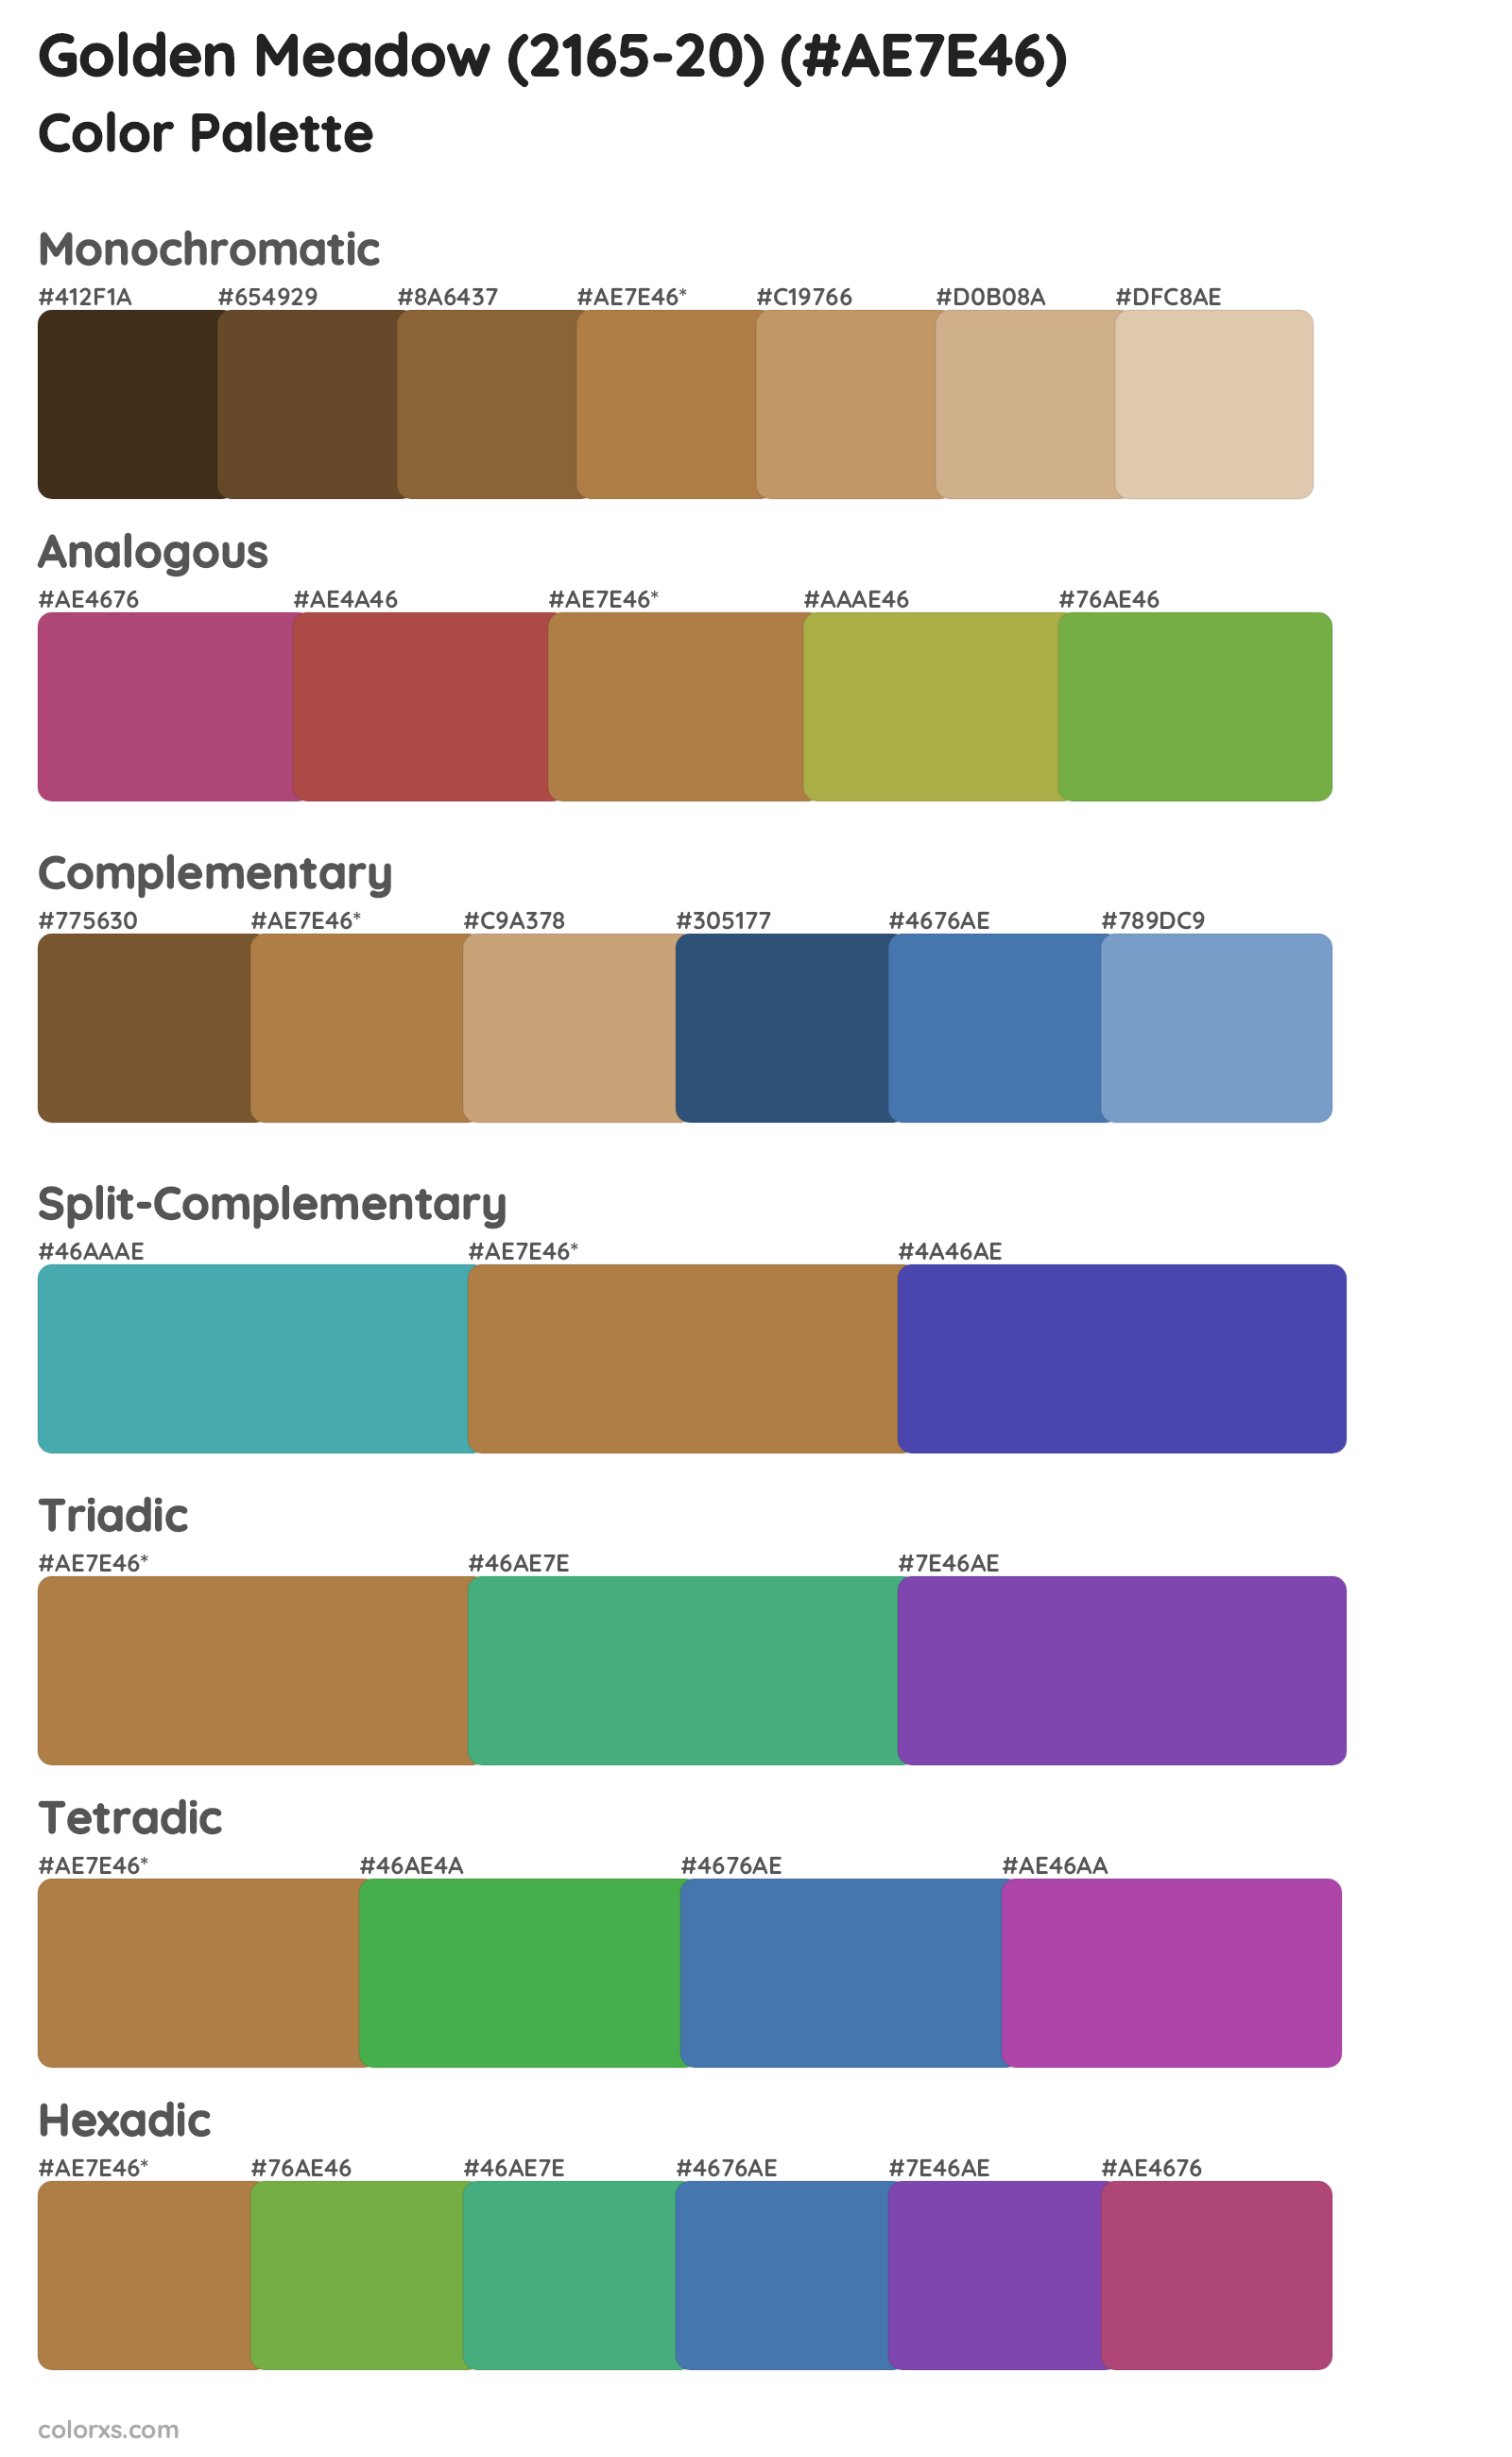 Golden Meadow (2165-20) Color Scheme Palettes